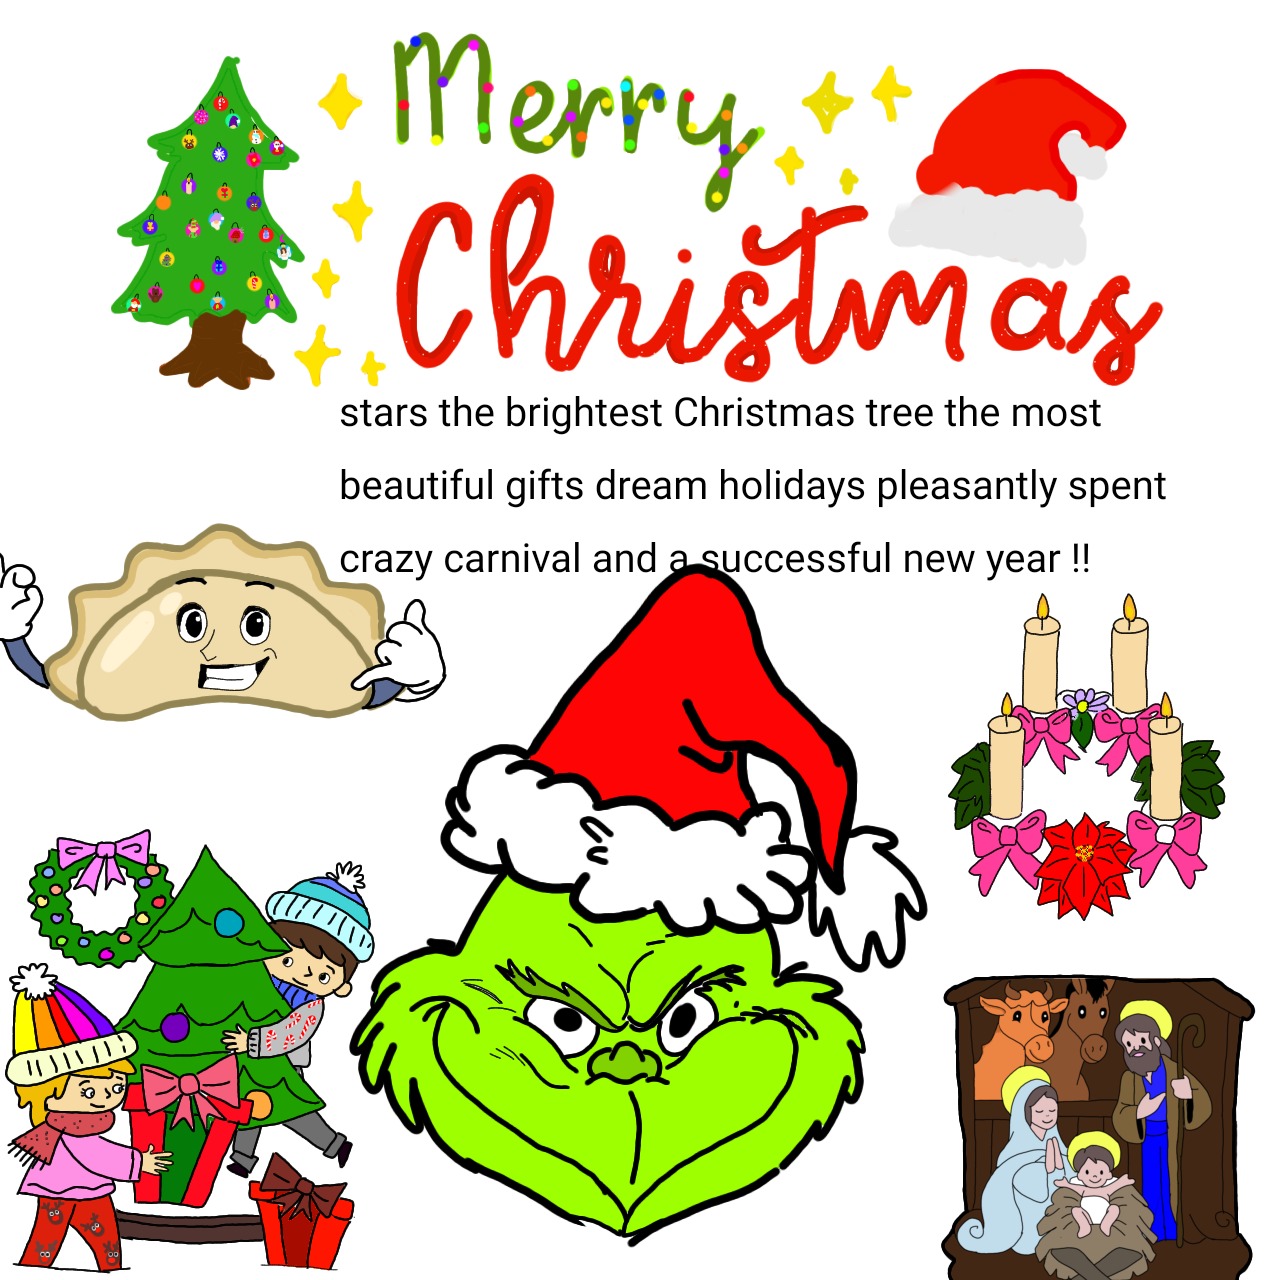 Kolorowa kartka świąteczna  z życzeniami w języku angielskim.